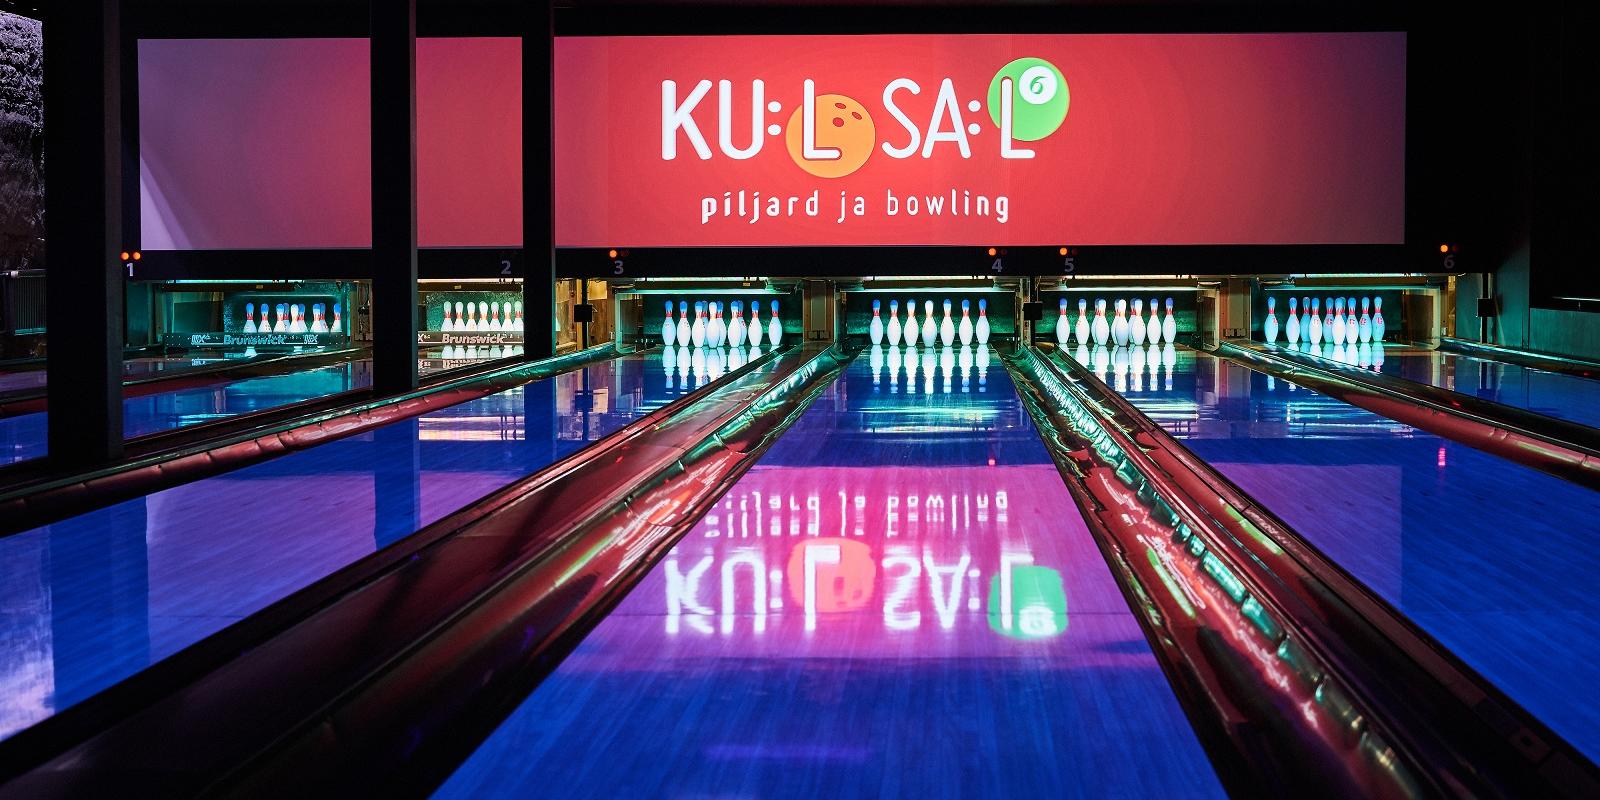 KU:LSA:L Bowling and Billiards Club